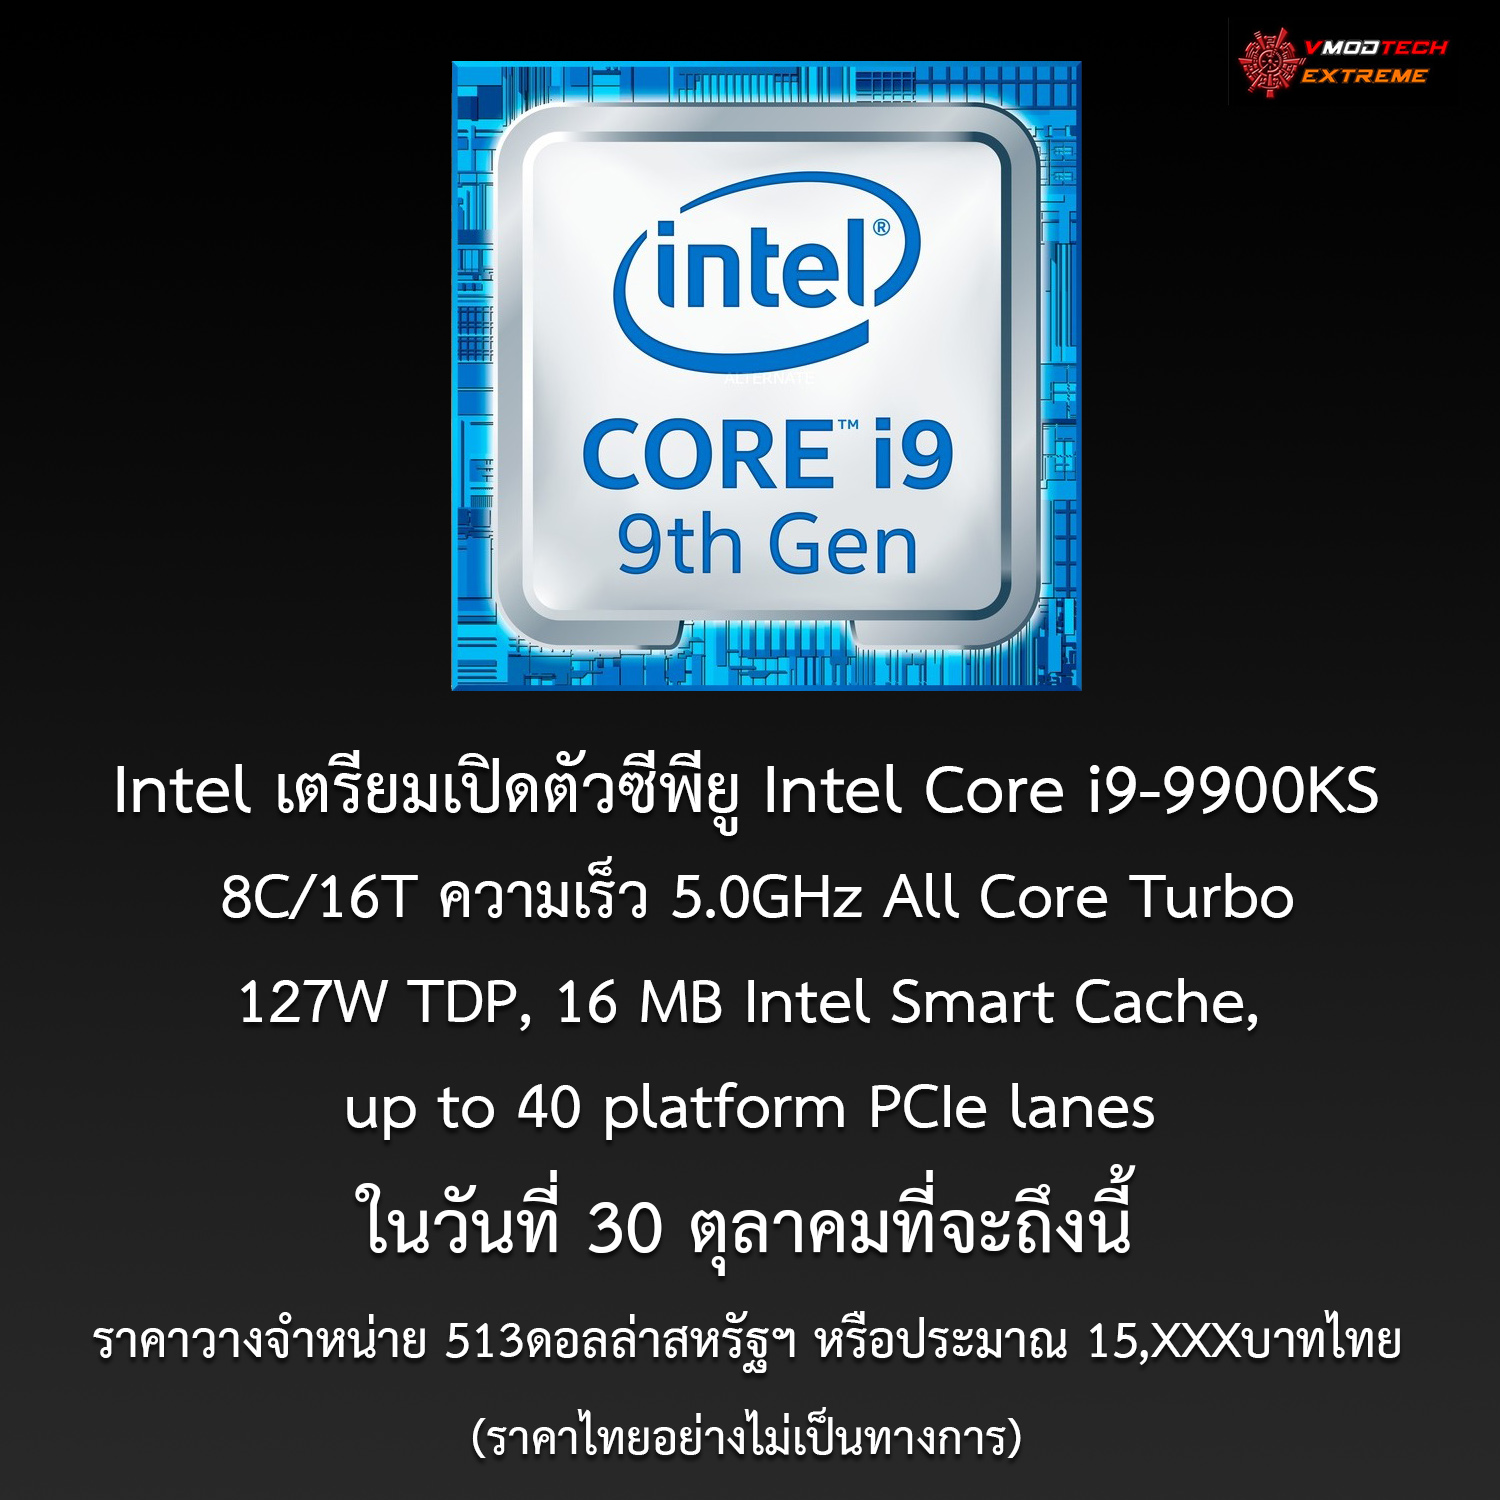 intel core i9 9900ks Intel เตรียมเปิดตัวซีพียู Intel Core i9 9900KS กับความเร็วระดับ 5.0GHz All Core Turbo ในวันที่ 30 ตุลาคมที่จะถึงนี้ โดยราคาวางจำหน่ายอยู่ที่ 513ดอลล่าสหรัฐฯ 